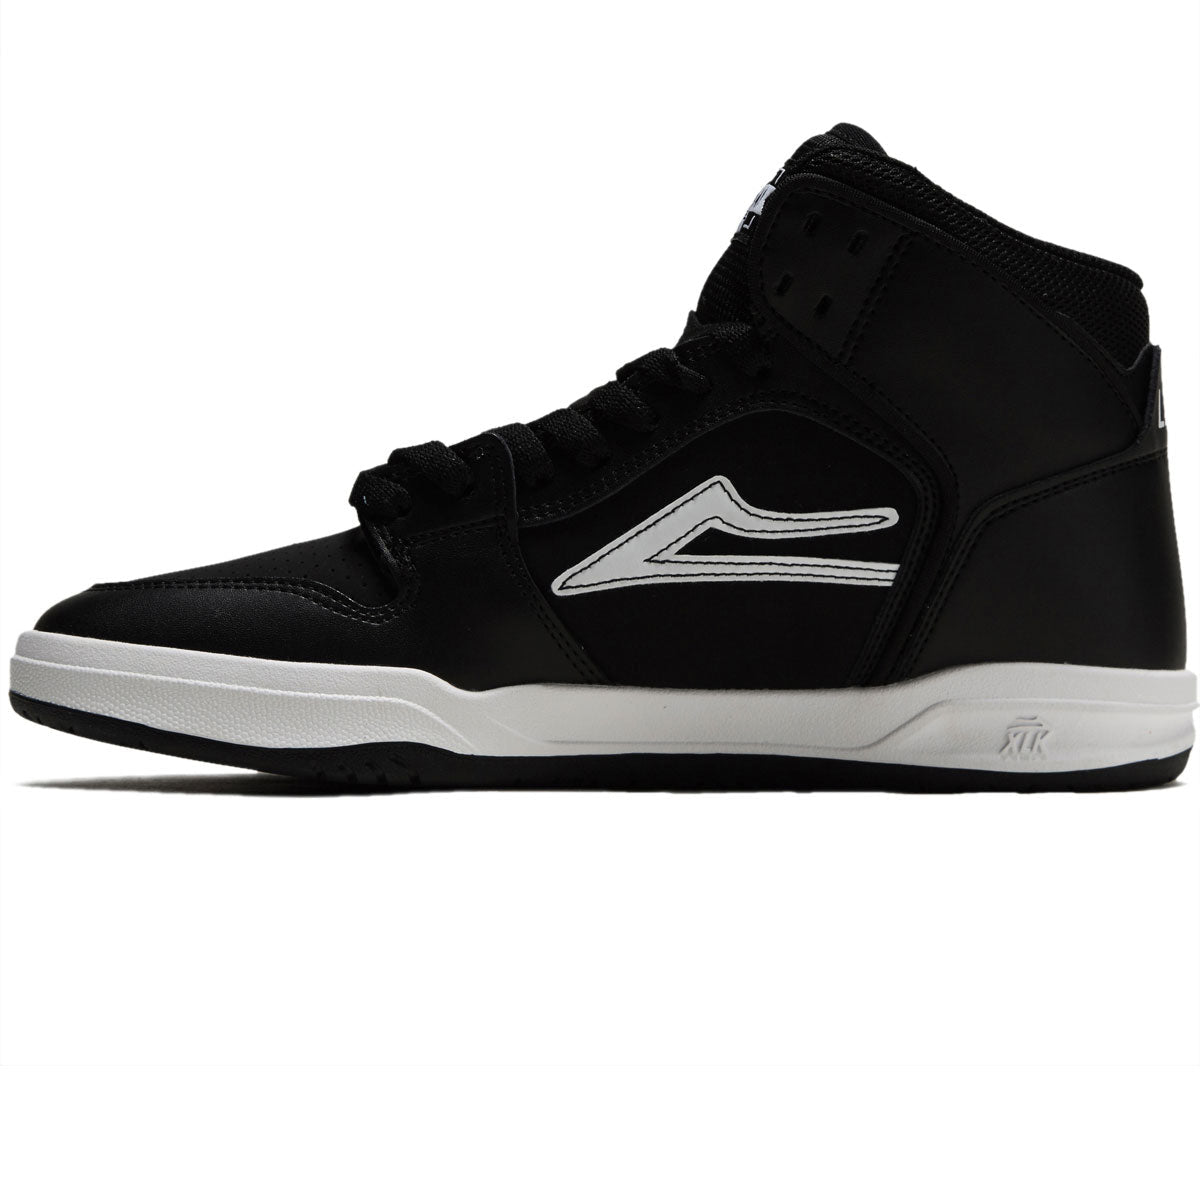 Lakai Telford Shoes - Black Leather image 2